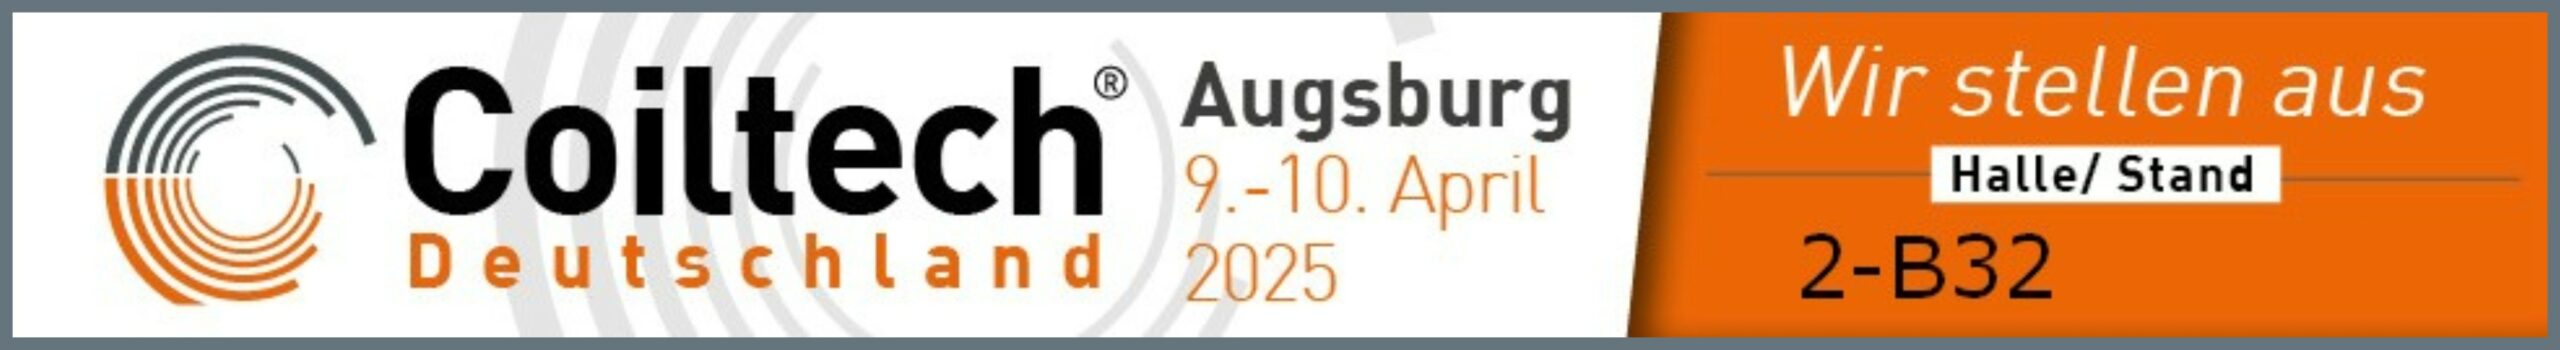 Besuchen Sie die tetranes vom 9. bis 10. April 2025 in Augsburg auf der Coiltech! Wir stellen in der Halle 2 am Stand B32 wieder aus. Wir freuen uns auf Ihr kommen!